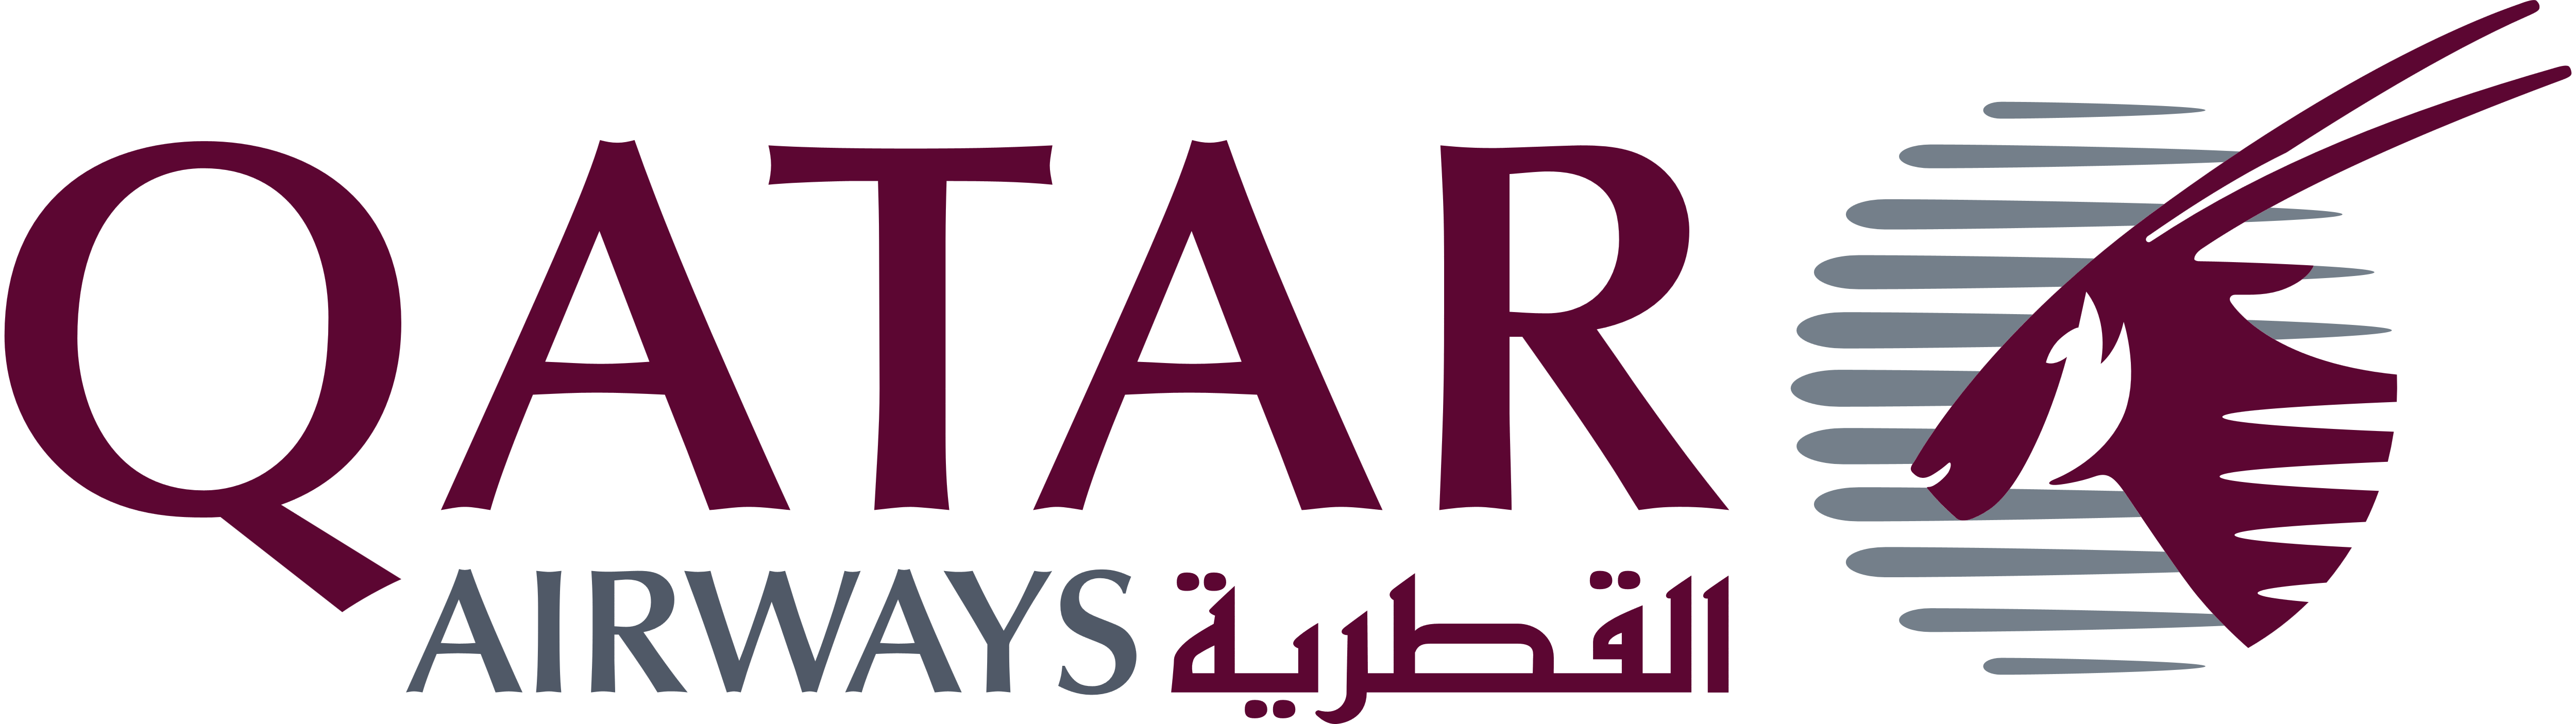 Resultado de imagen para qatar airways logo